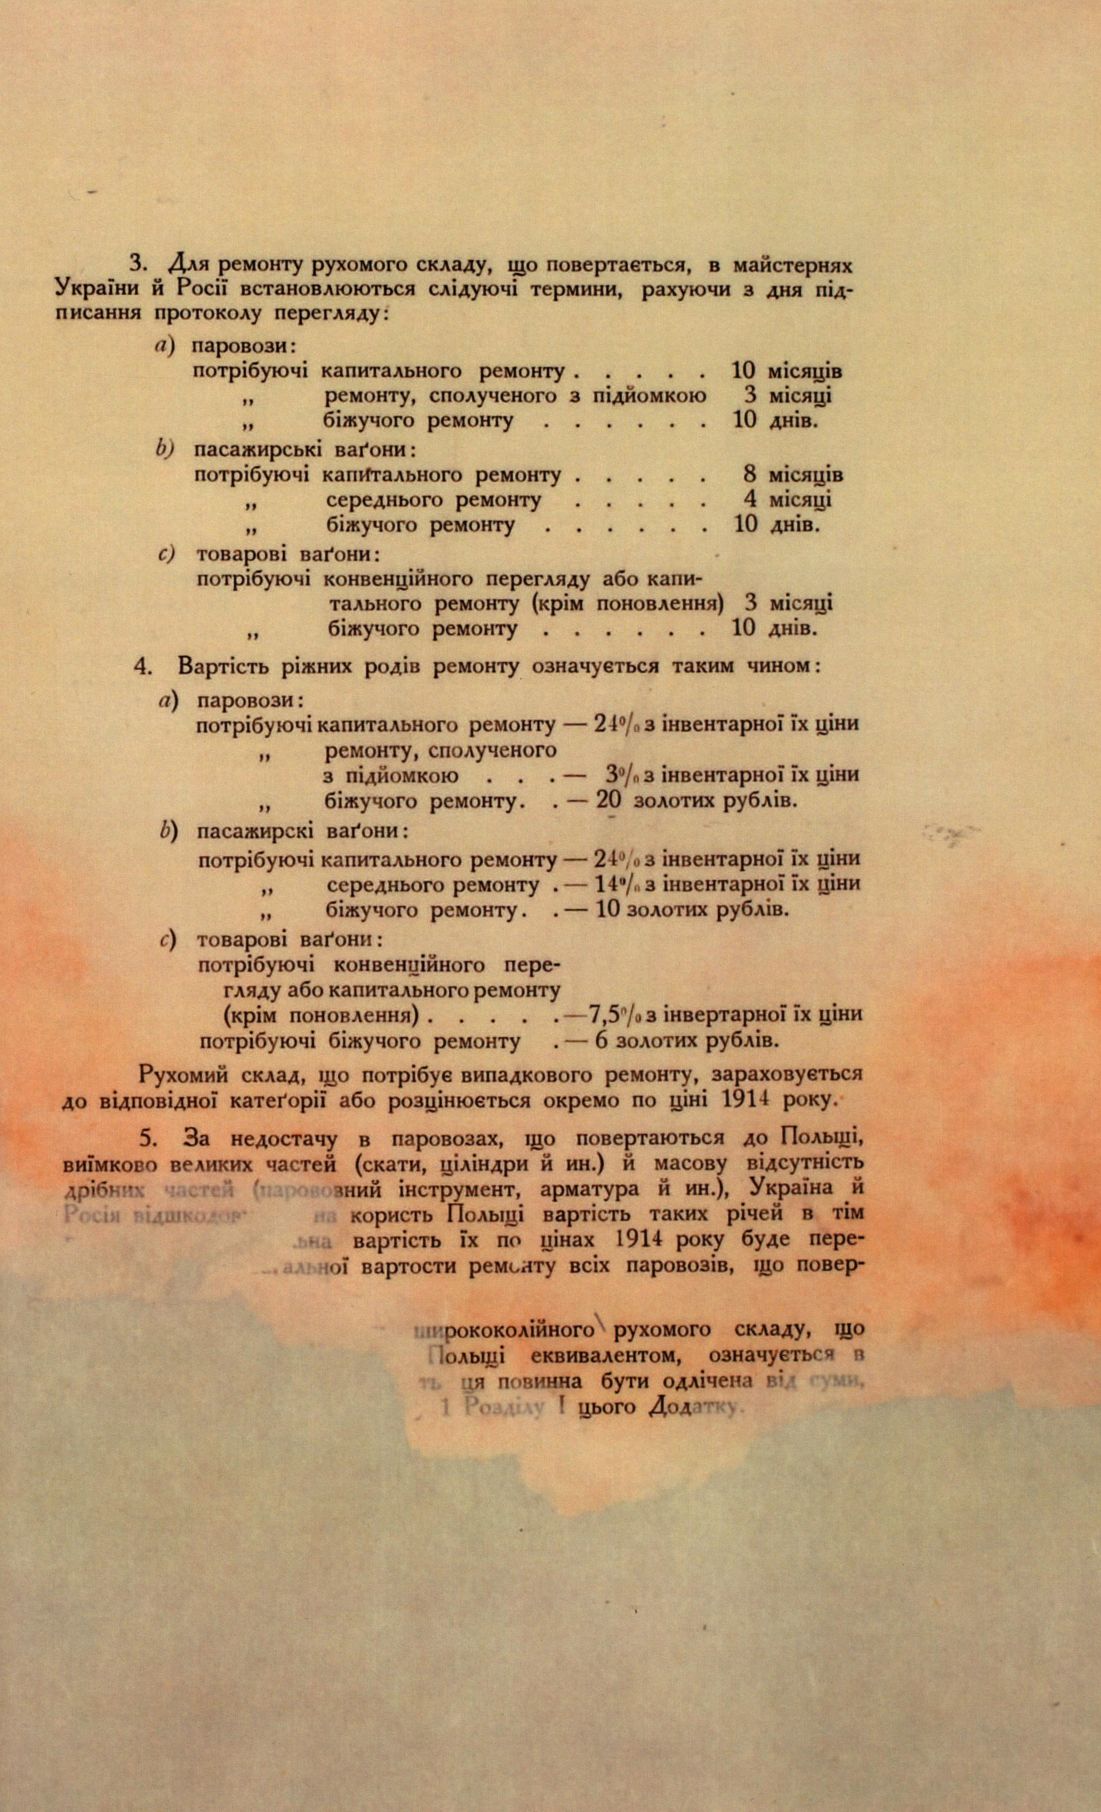 Traktat Pokoju między Polską a Rosją i Ukrainą podpisany w Rydze dnia 18 marca 1921 roku, s. 94, MSZ, sygn. 6739.